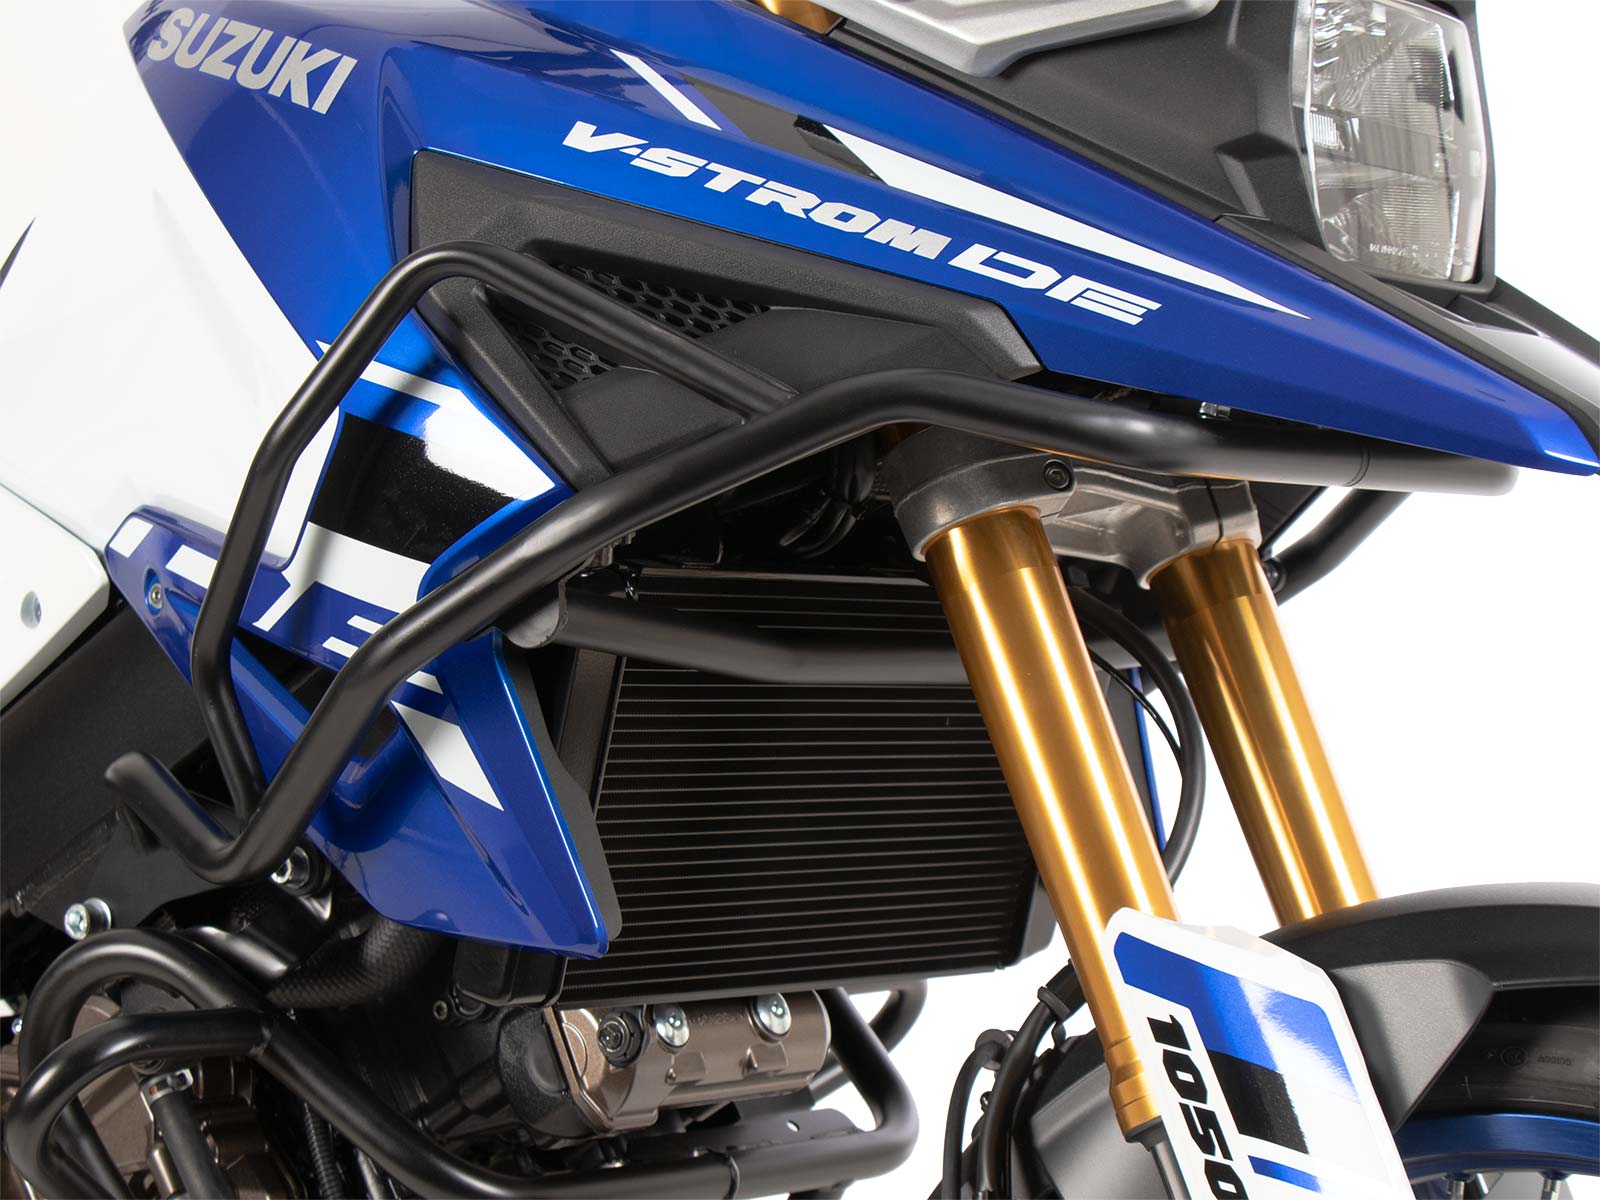 Accessories for Suzuki V-Strom 1050 XT (2020-2022)